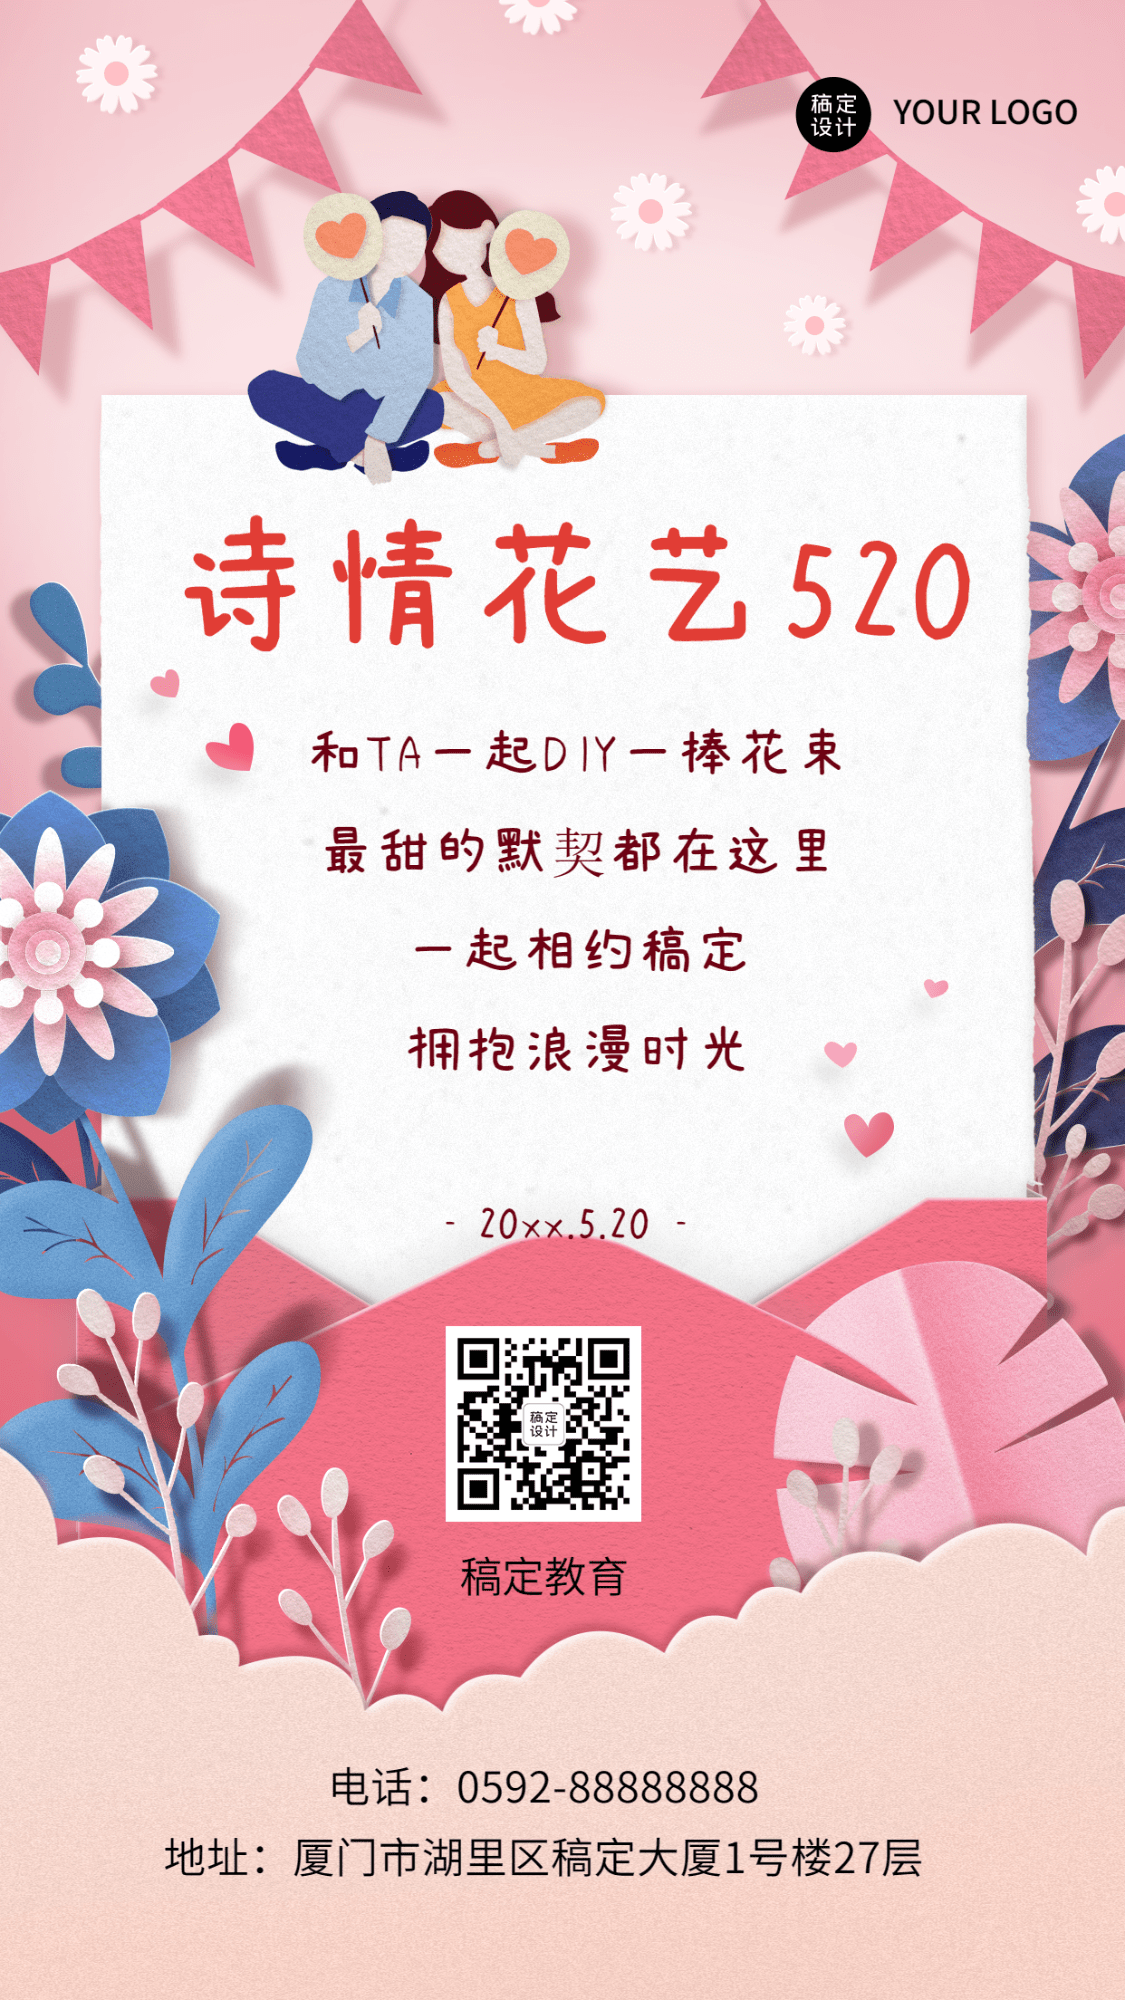 520情人节主题DIY活动邀请函手机海报预览效果